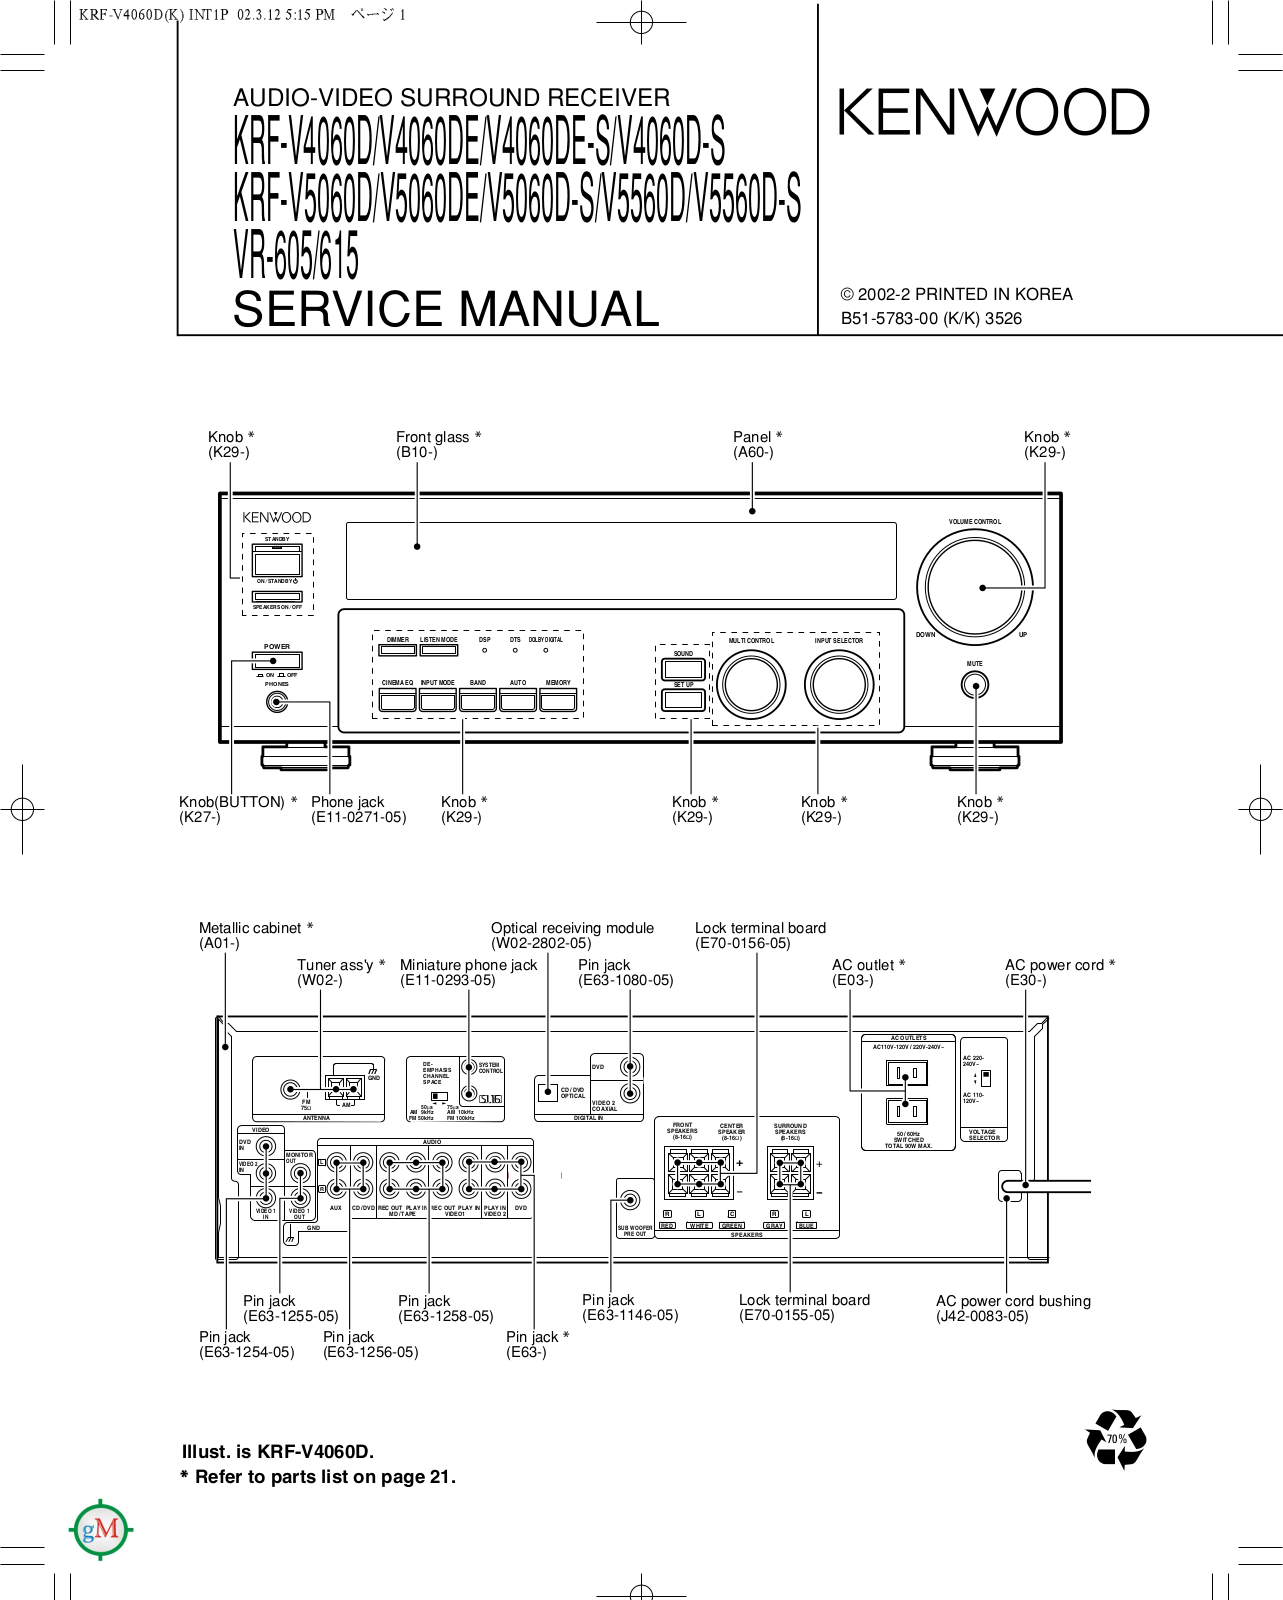 Kenwood KRFV-4060, KRFV-5060, KRFV-5560, VR-605, VR-615 Service manual